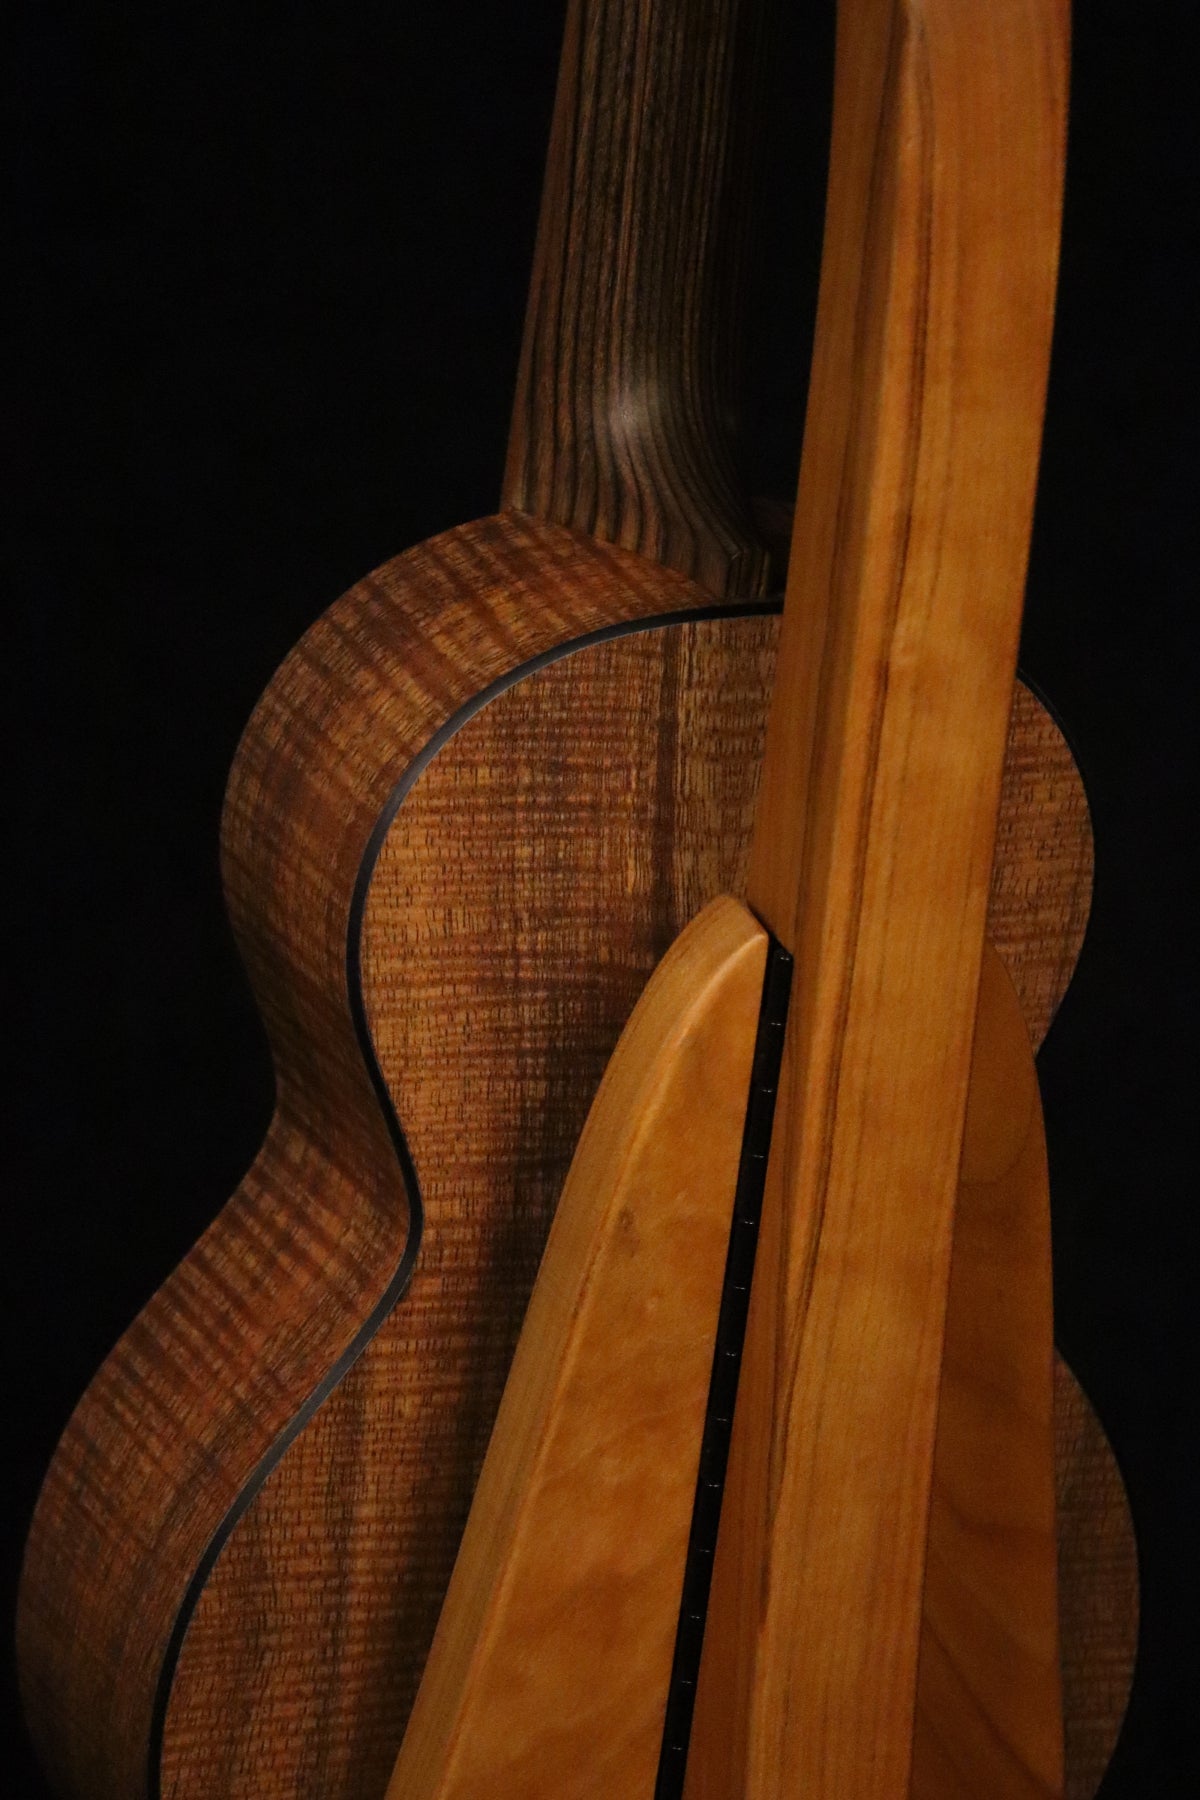 Folding cherry wood ukulele floor stand closeup rear image with Martin ukulele